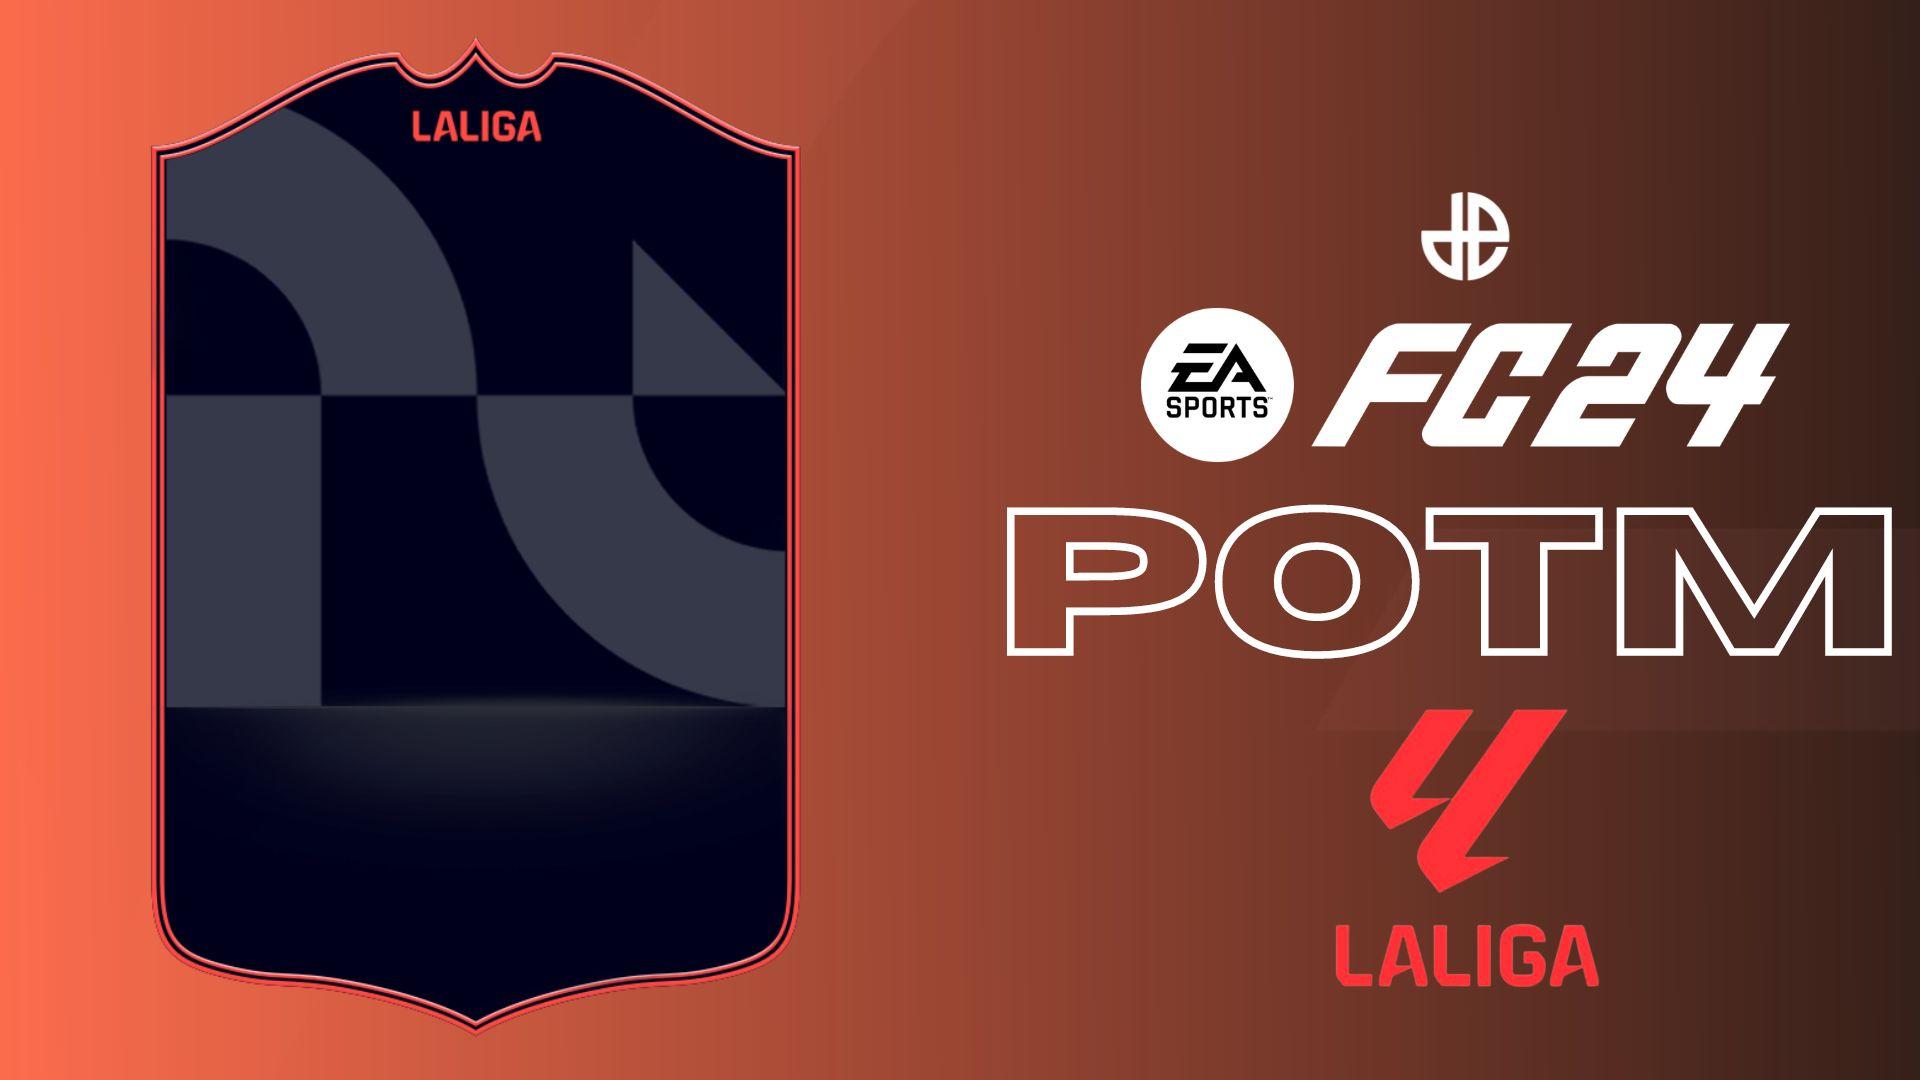 FOOTBALL HEADS: LA LIGA free online game on